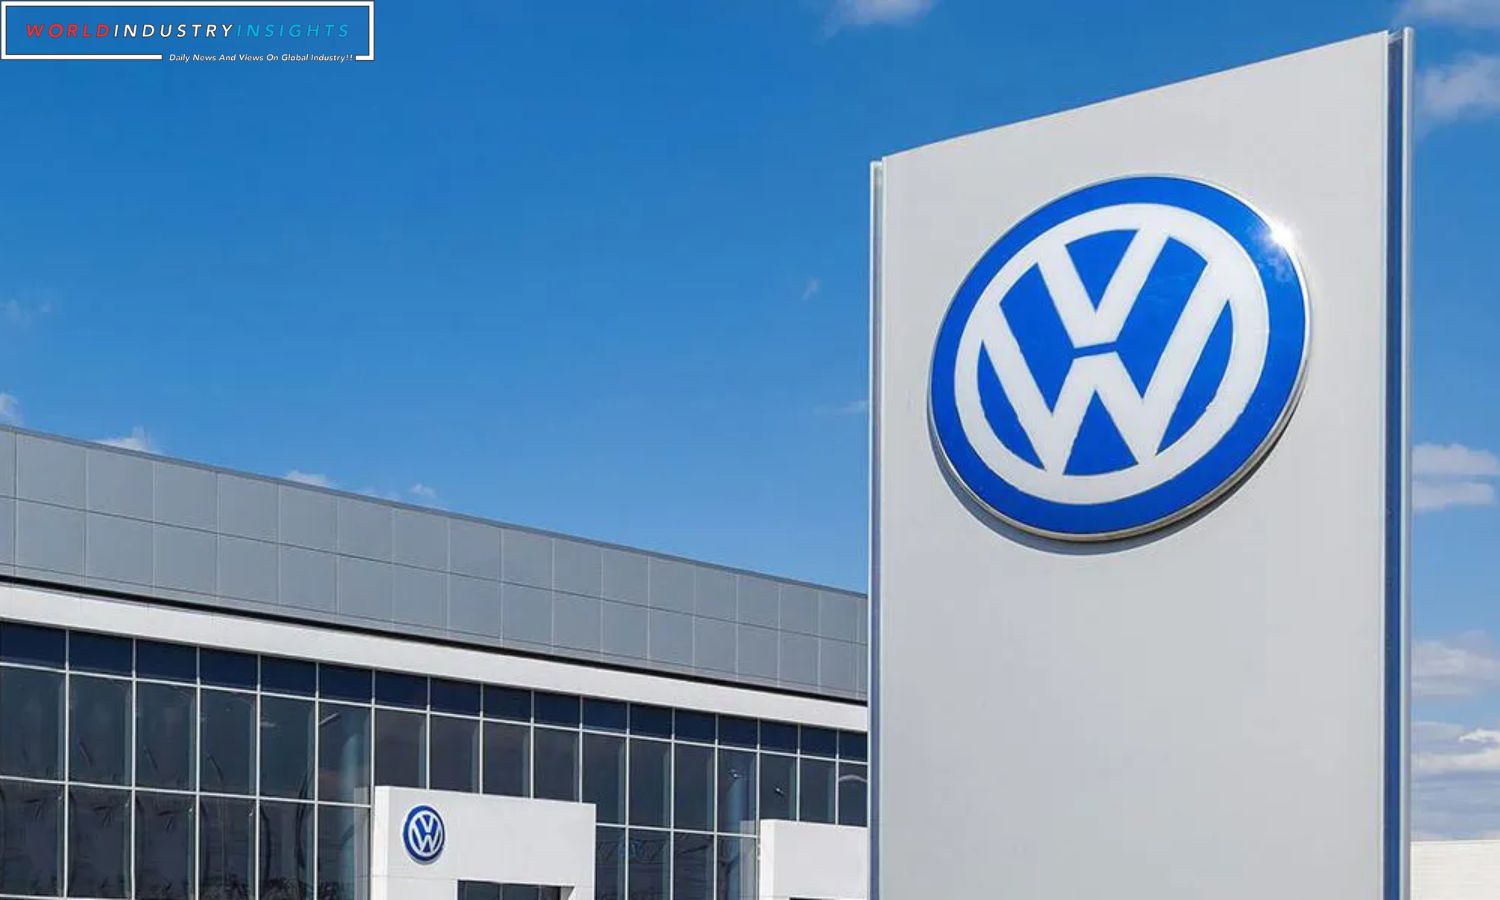 Volkswagen Cariad Unit Faces Job Cuts